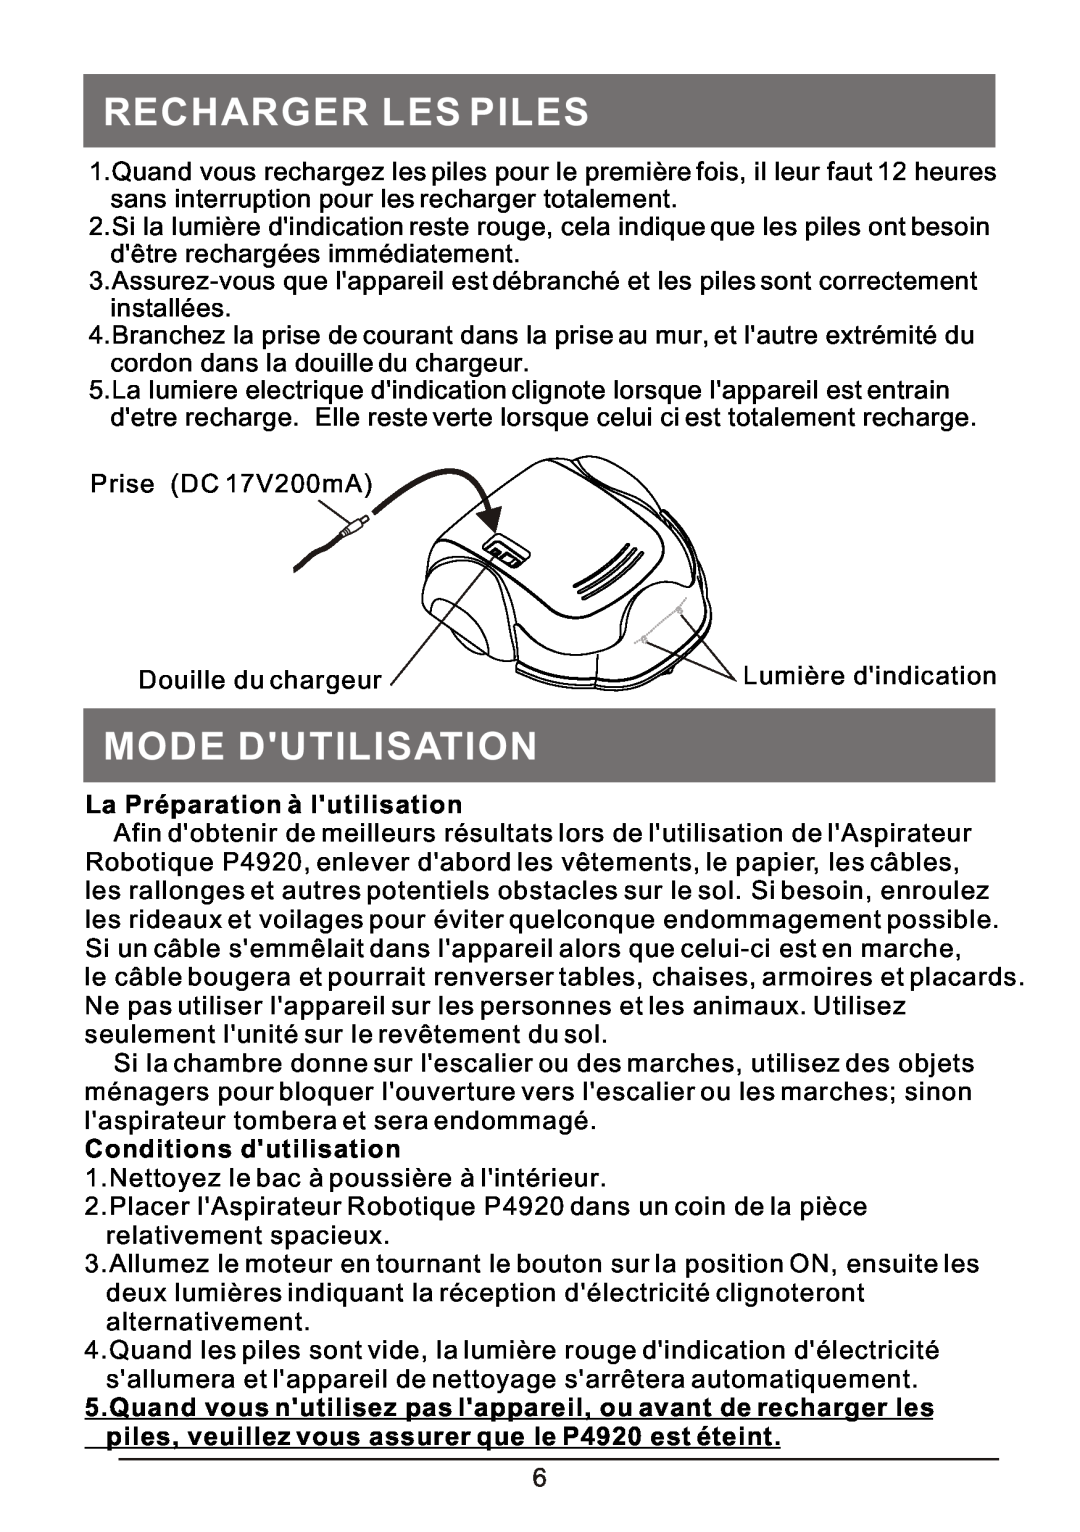 P3 International P4920 Recharger Les Piles, Mode Dutilisation, La Préparation à lutilisation, Conditions dutilisation 